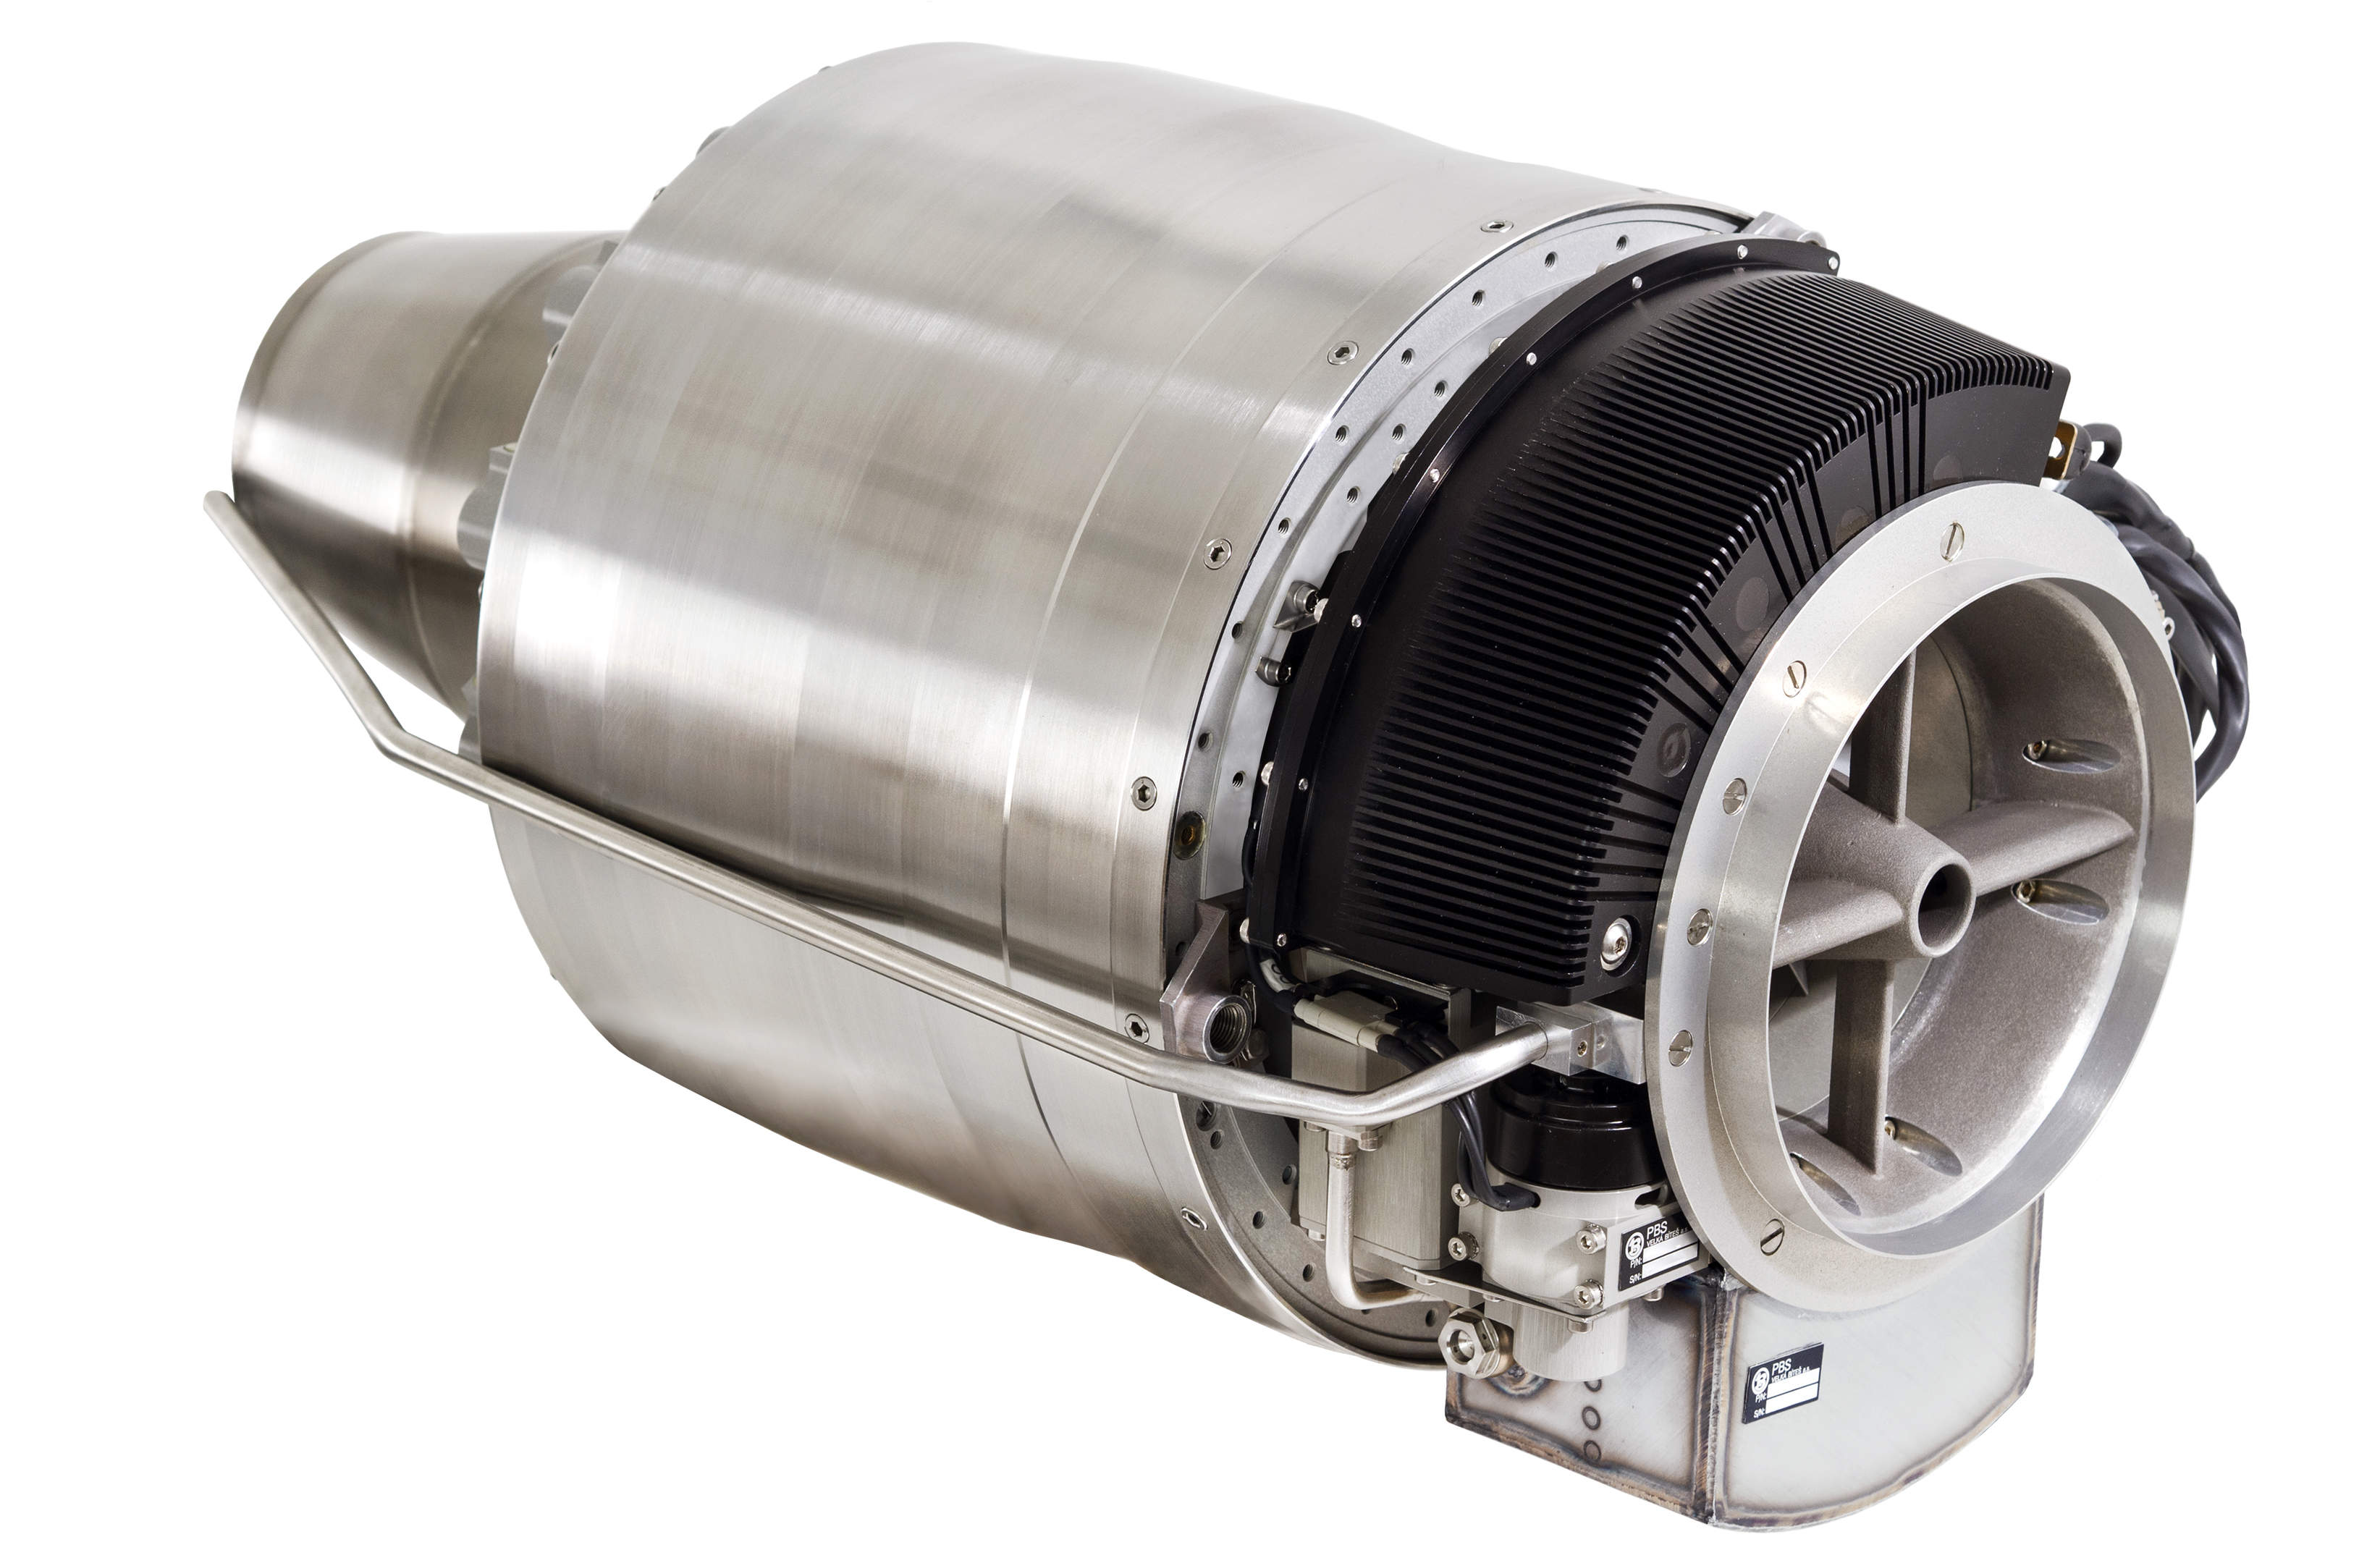 PBS letos vyrobí již 1 000. proudový motor PBS TJ100. Na veletrhu IDET představuje svůj nejnovější turbínový motor PBS TJ150